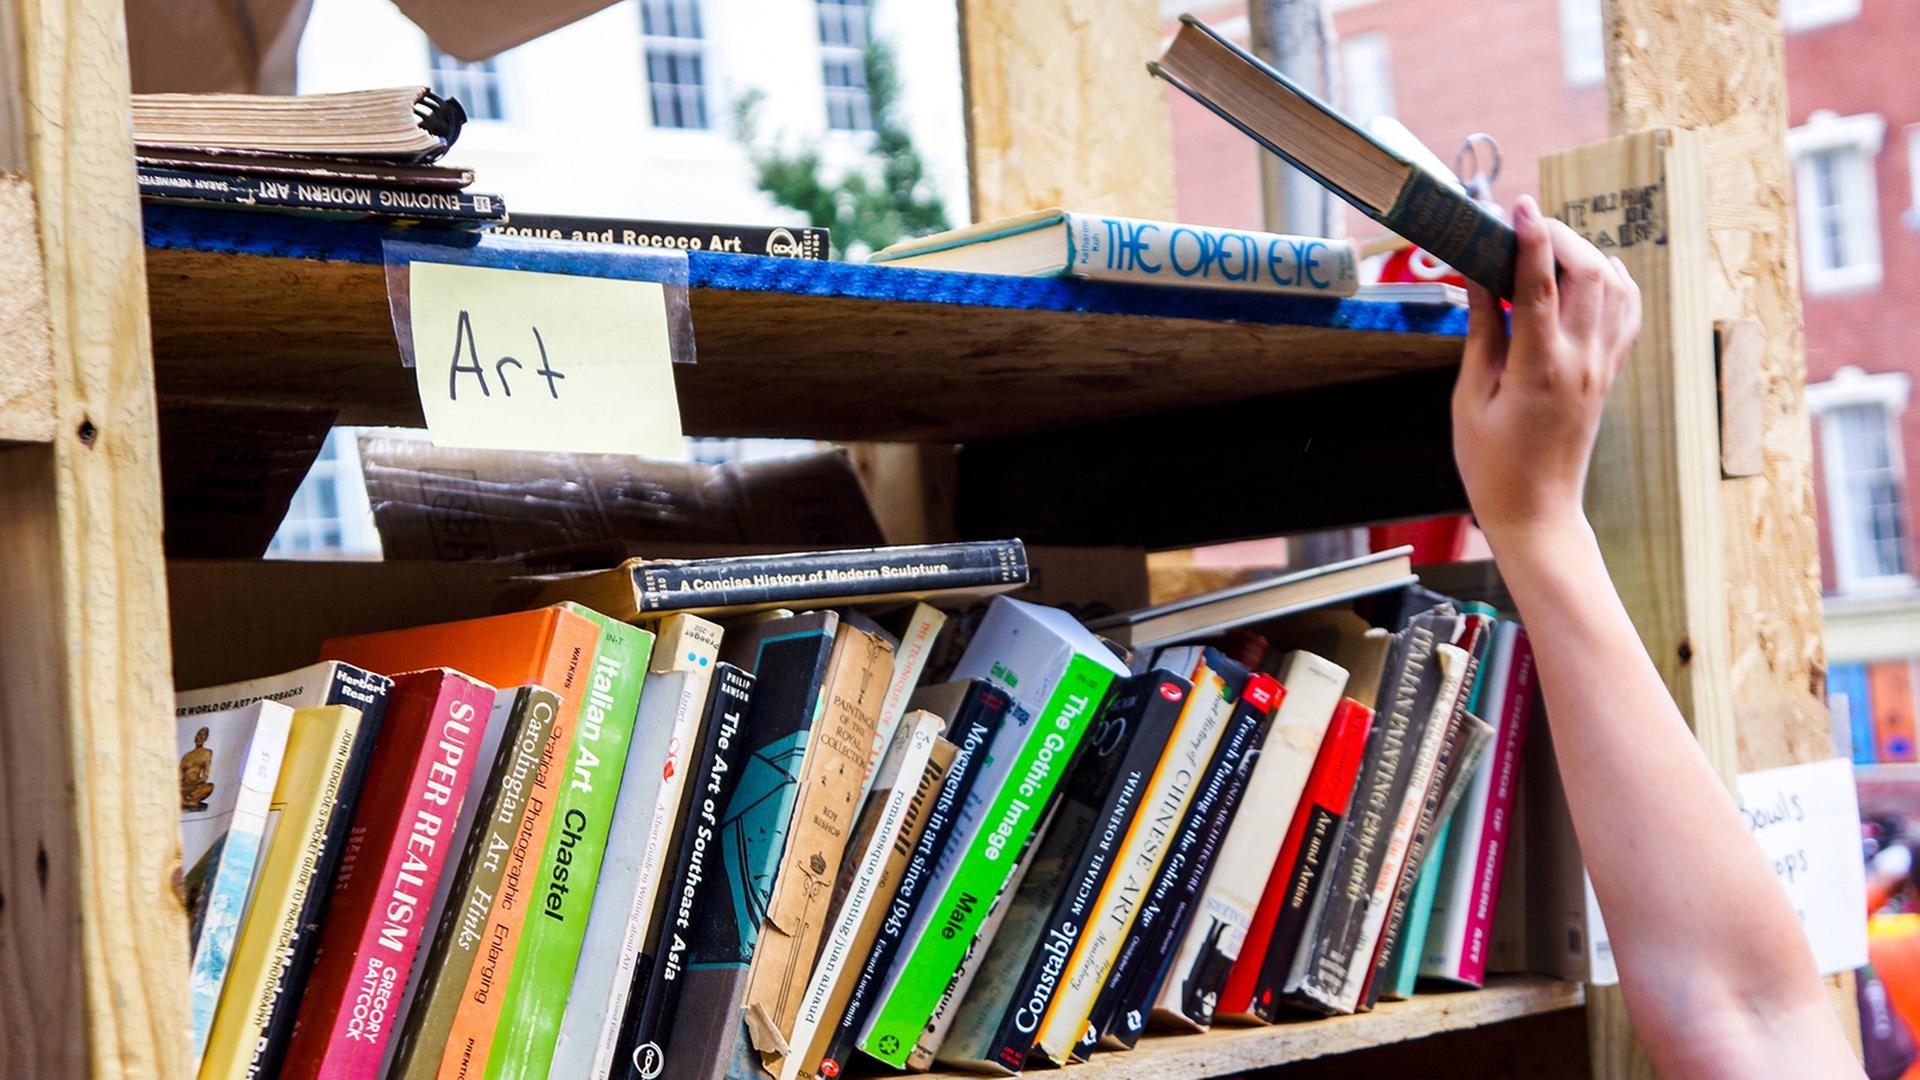 Eine Hand greift ein Buch aus einem Regal mit gebrauchten Büchern.